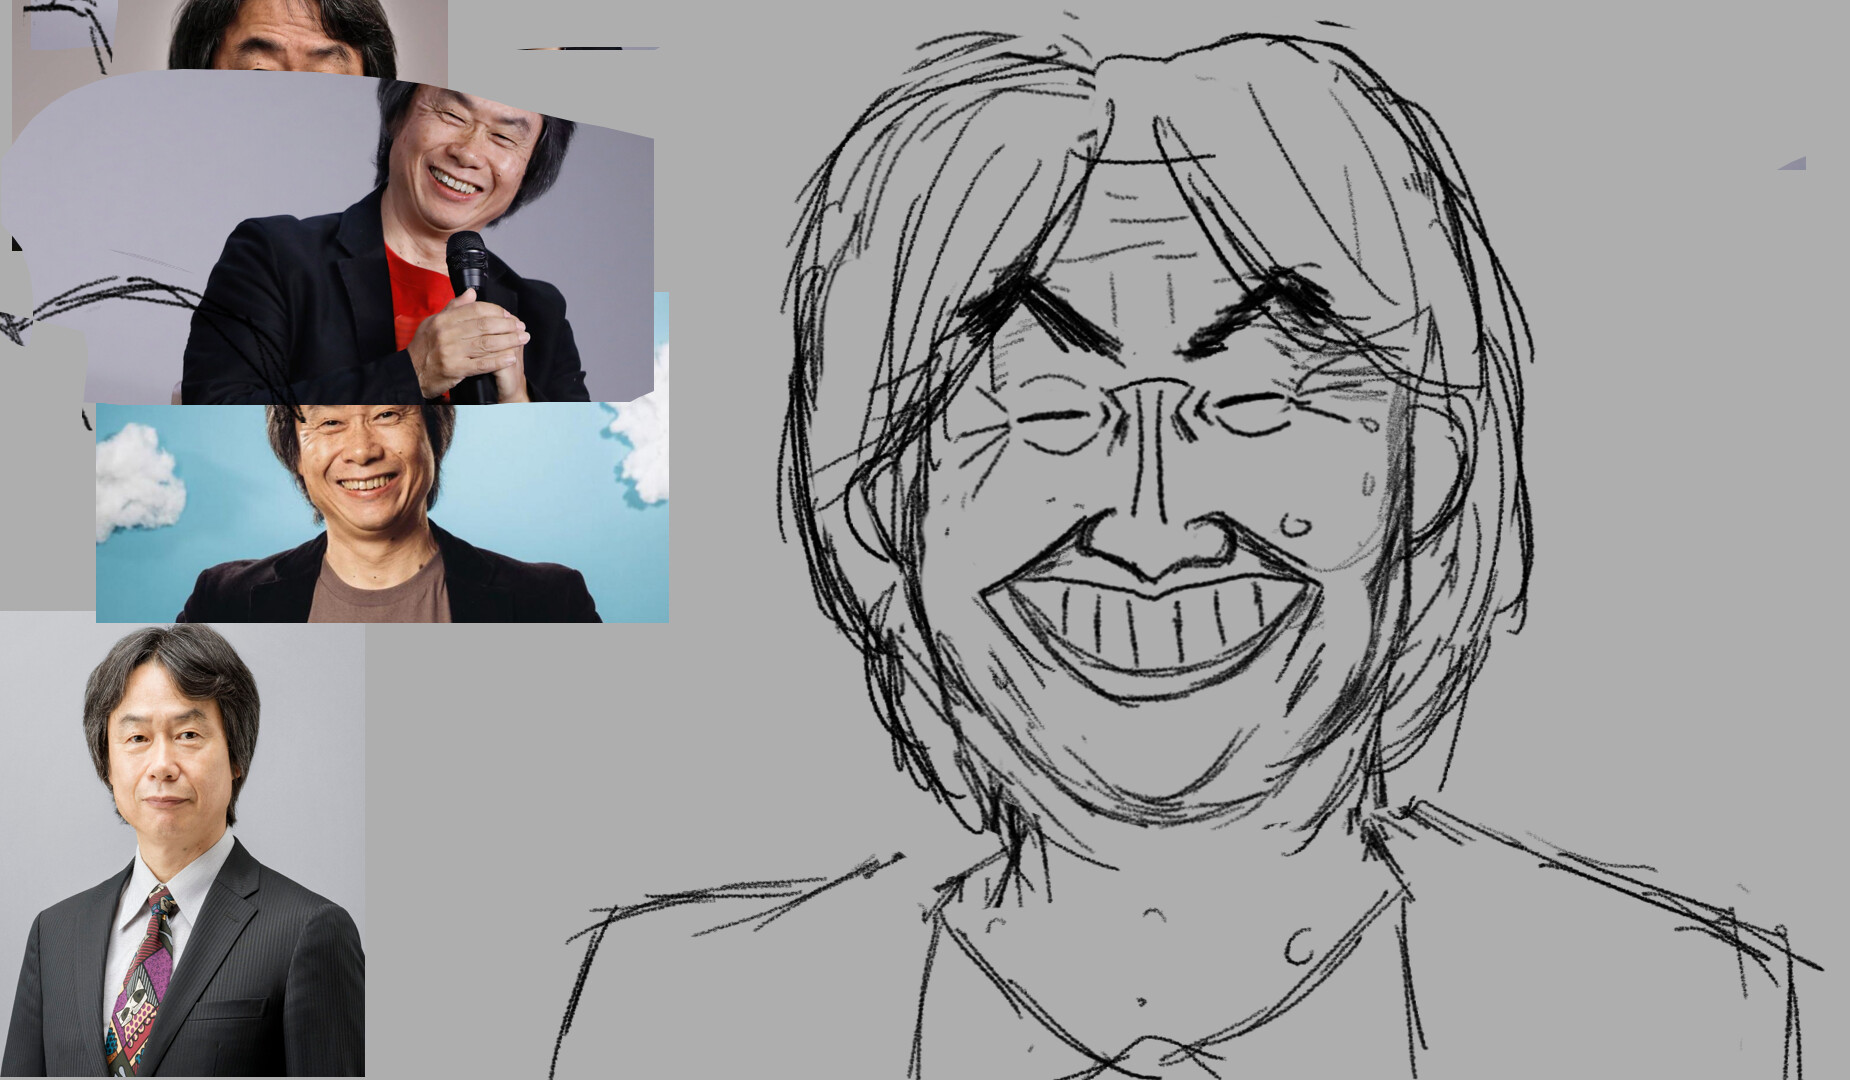 ArtStation - Shigeru Miyamoto - Caricature